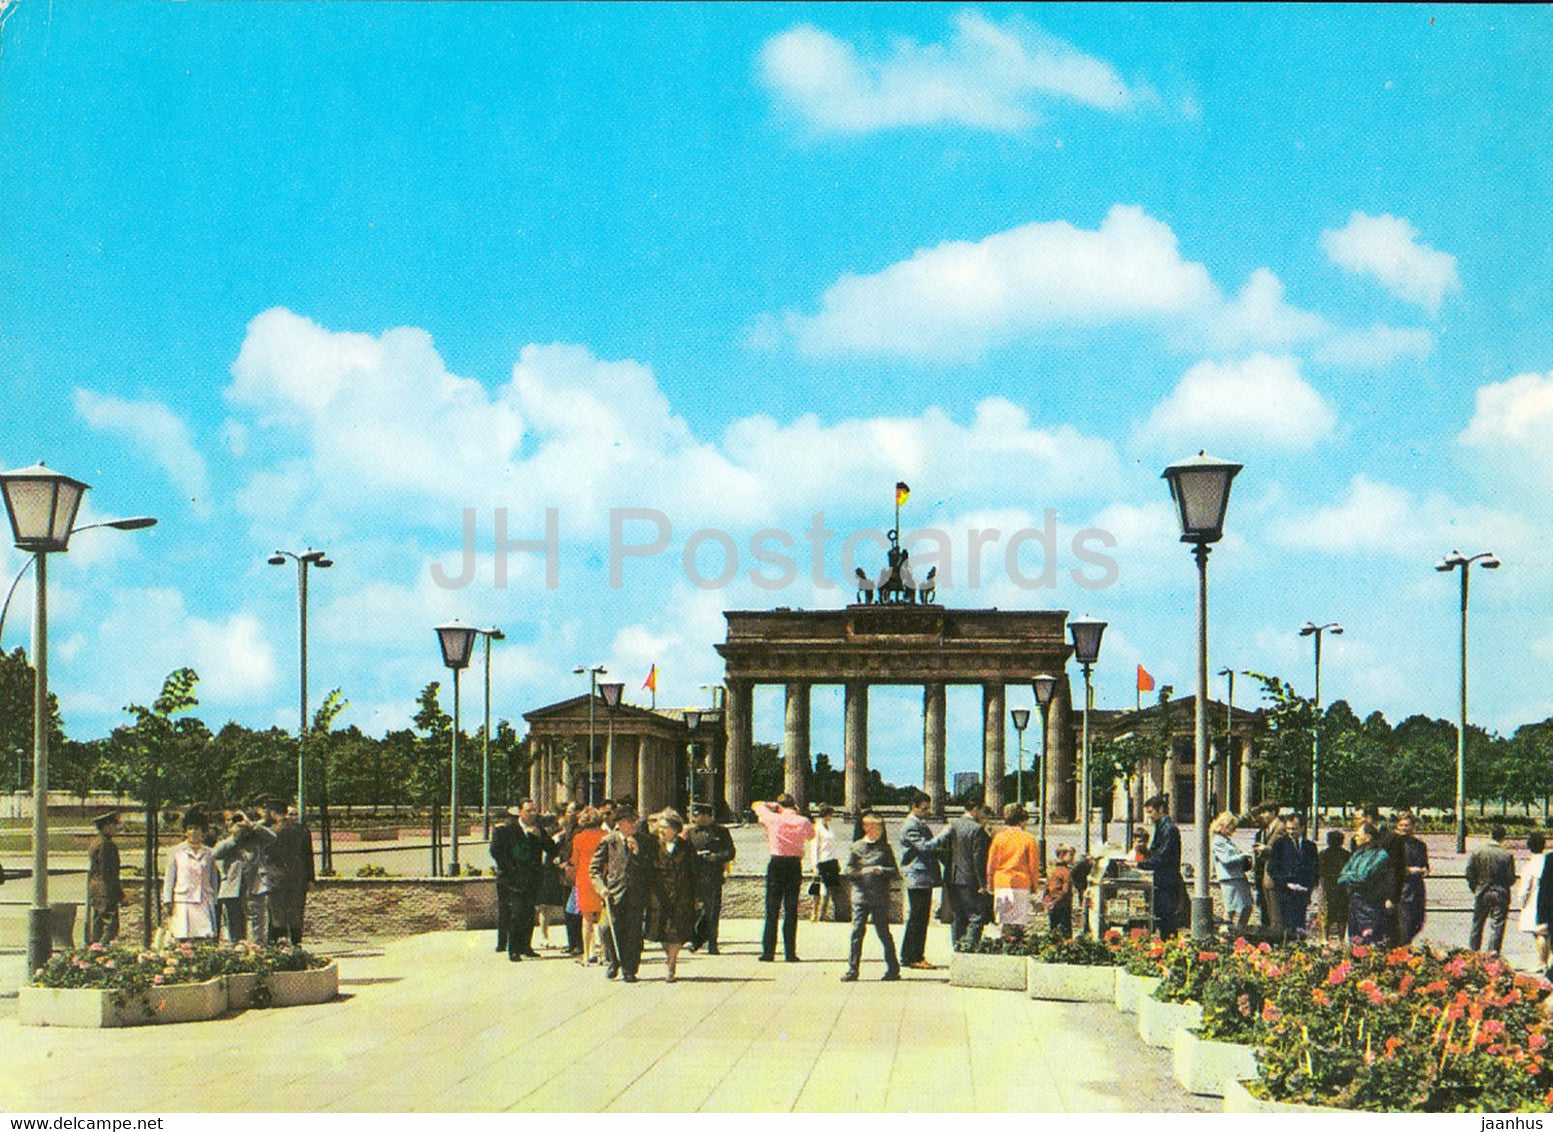 Berlin - Hauptstadt der DDR - Branderburger Tor - Branderburg Gate - Germany DDR - unused - JH Postcards